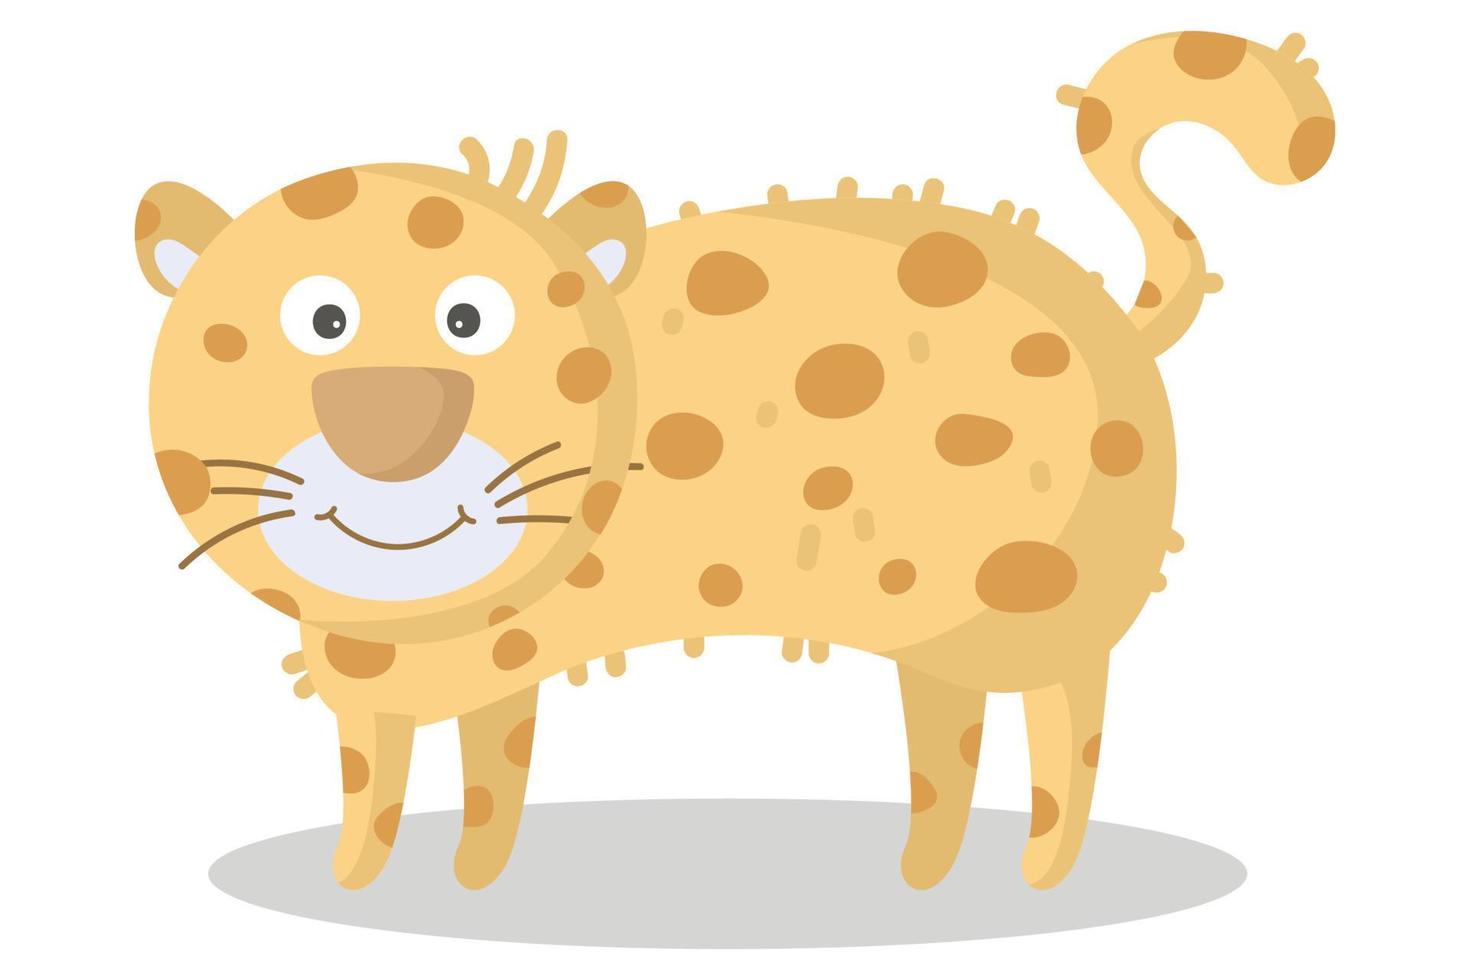 leopardo de desenho vetorial. animal africano. engraçado tipo leopardo. personagem bonito engraçado. adorável animal africano para impressão de moda, roupas infantis, berçário, pôster, convite, design de cartão de saudação vetor